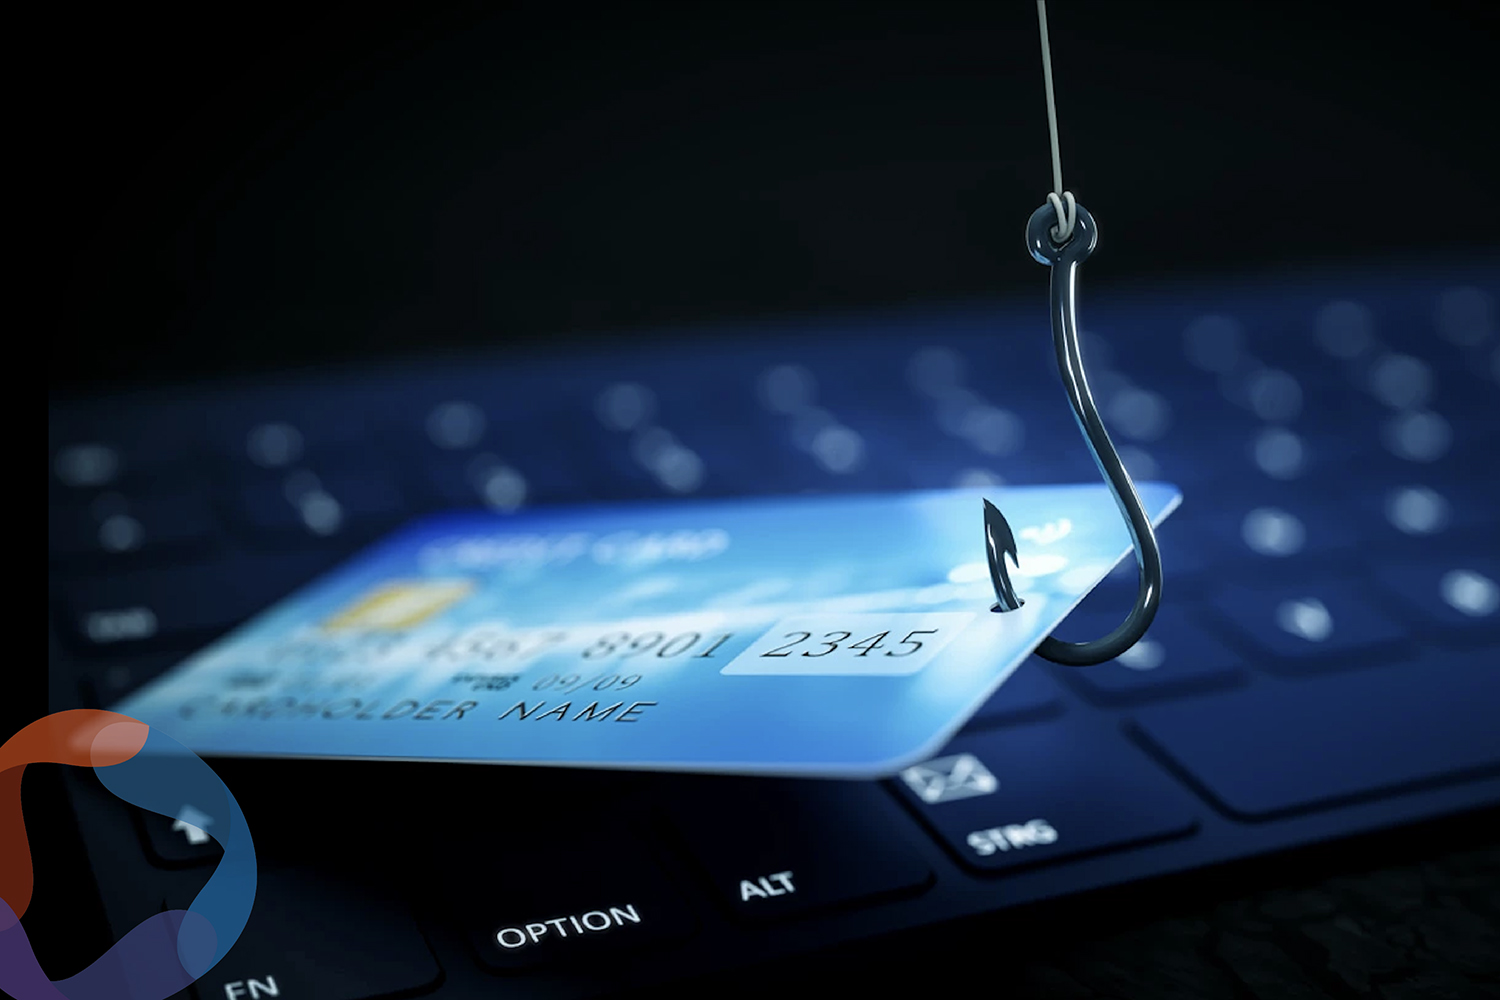 Condusef alerta sobre nuevo modus operandi de fraude en tarjetas bancarias